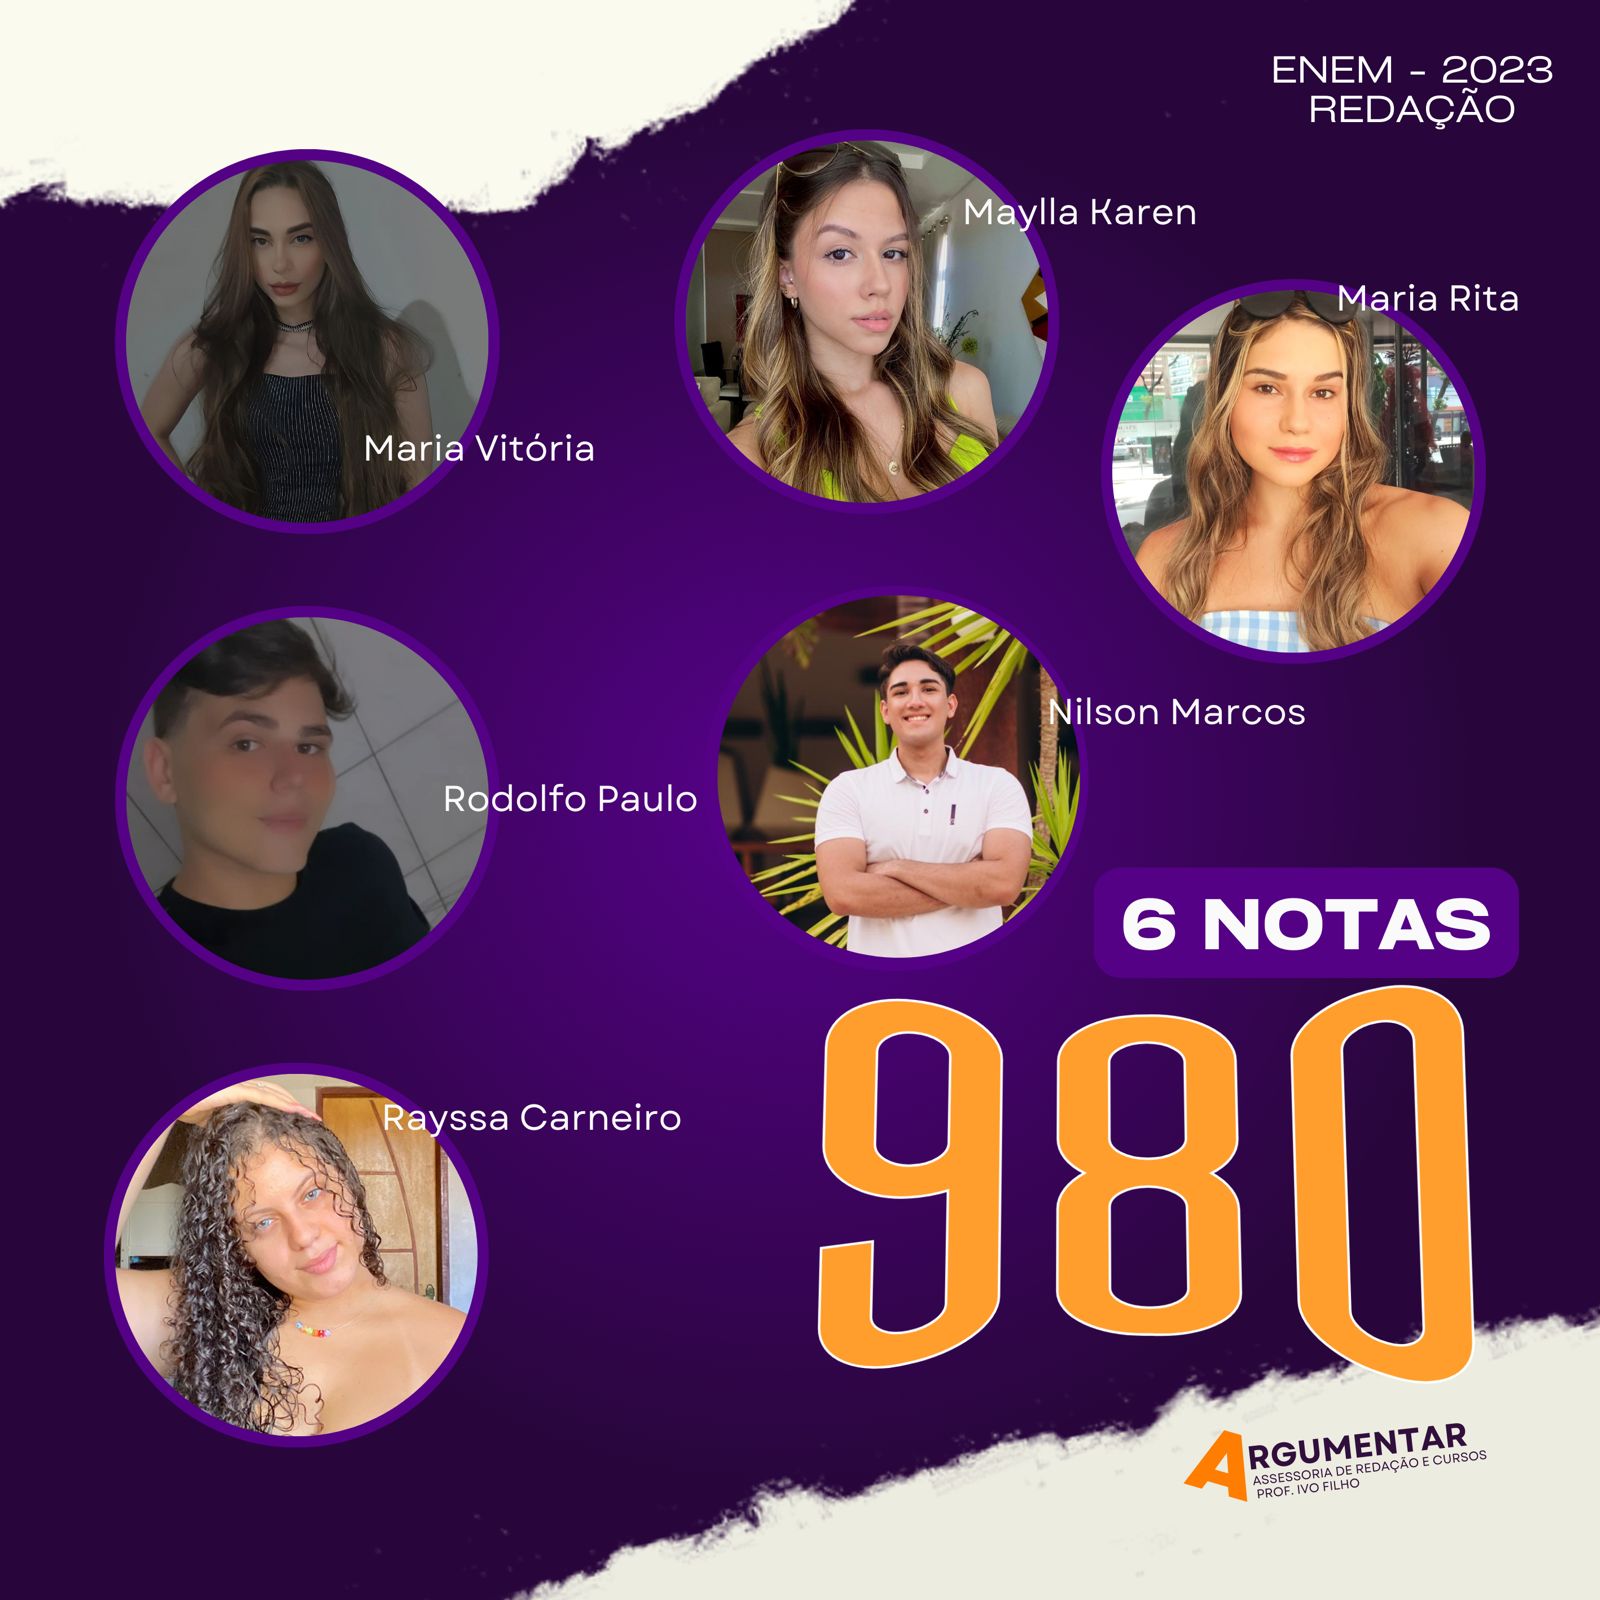 ITAPORANGA: Estudantes da Assessoria Argumentar conseguem obter 980 pontos na redação do Enem.